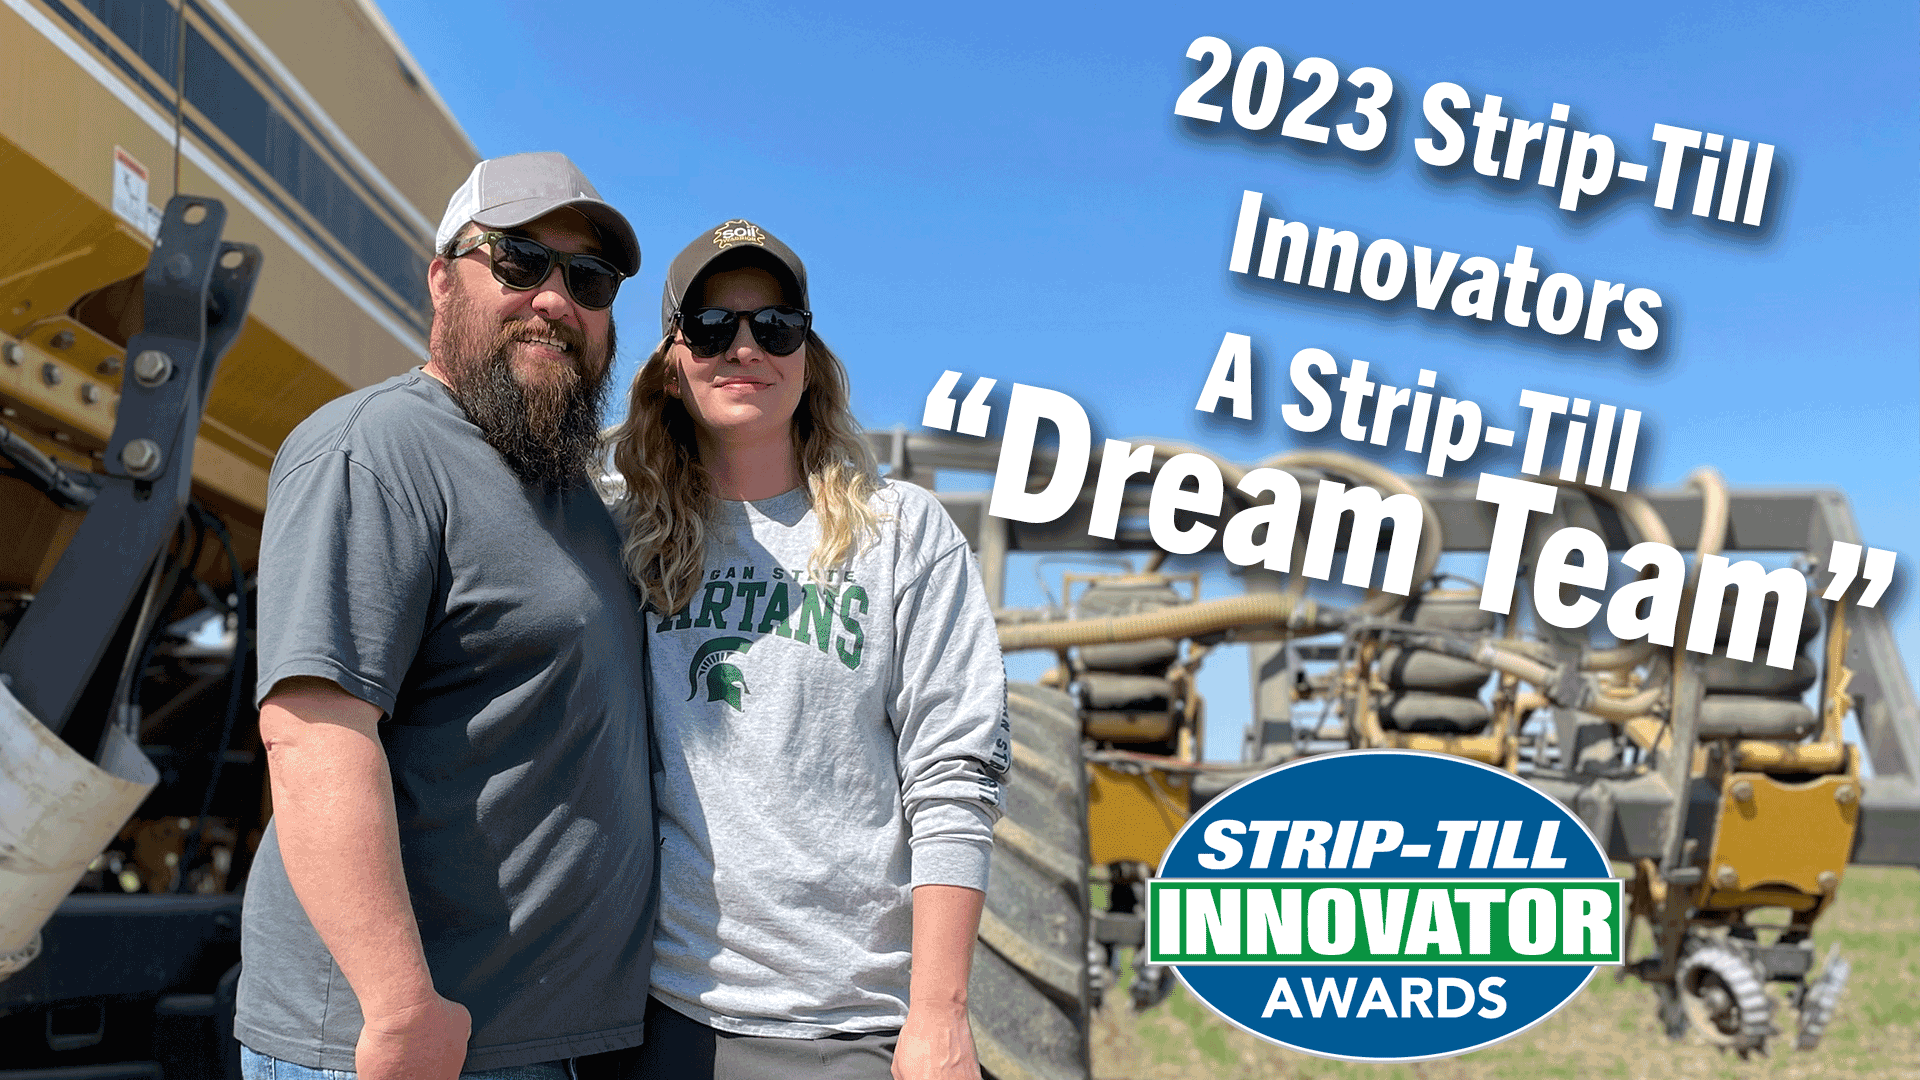 2023-Strip-Till-Innovators-A-Strip-Till-“Dream-Team”.png